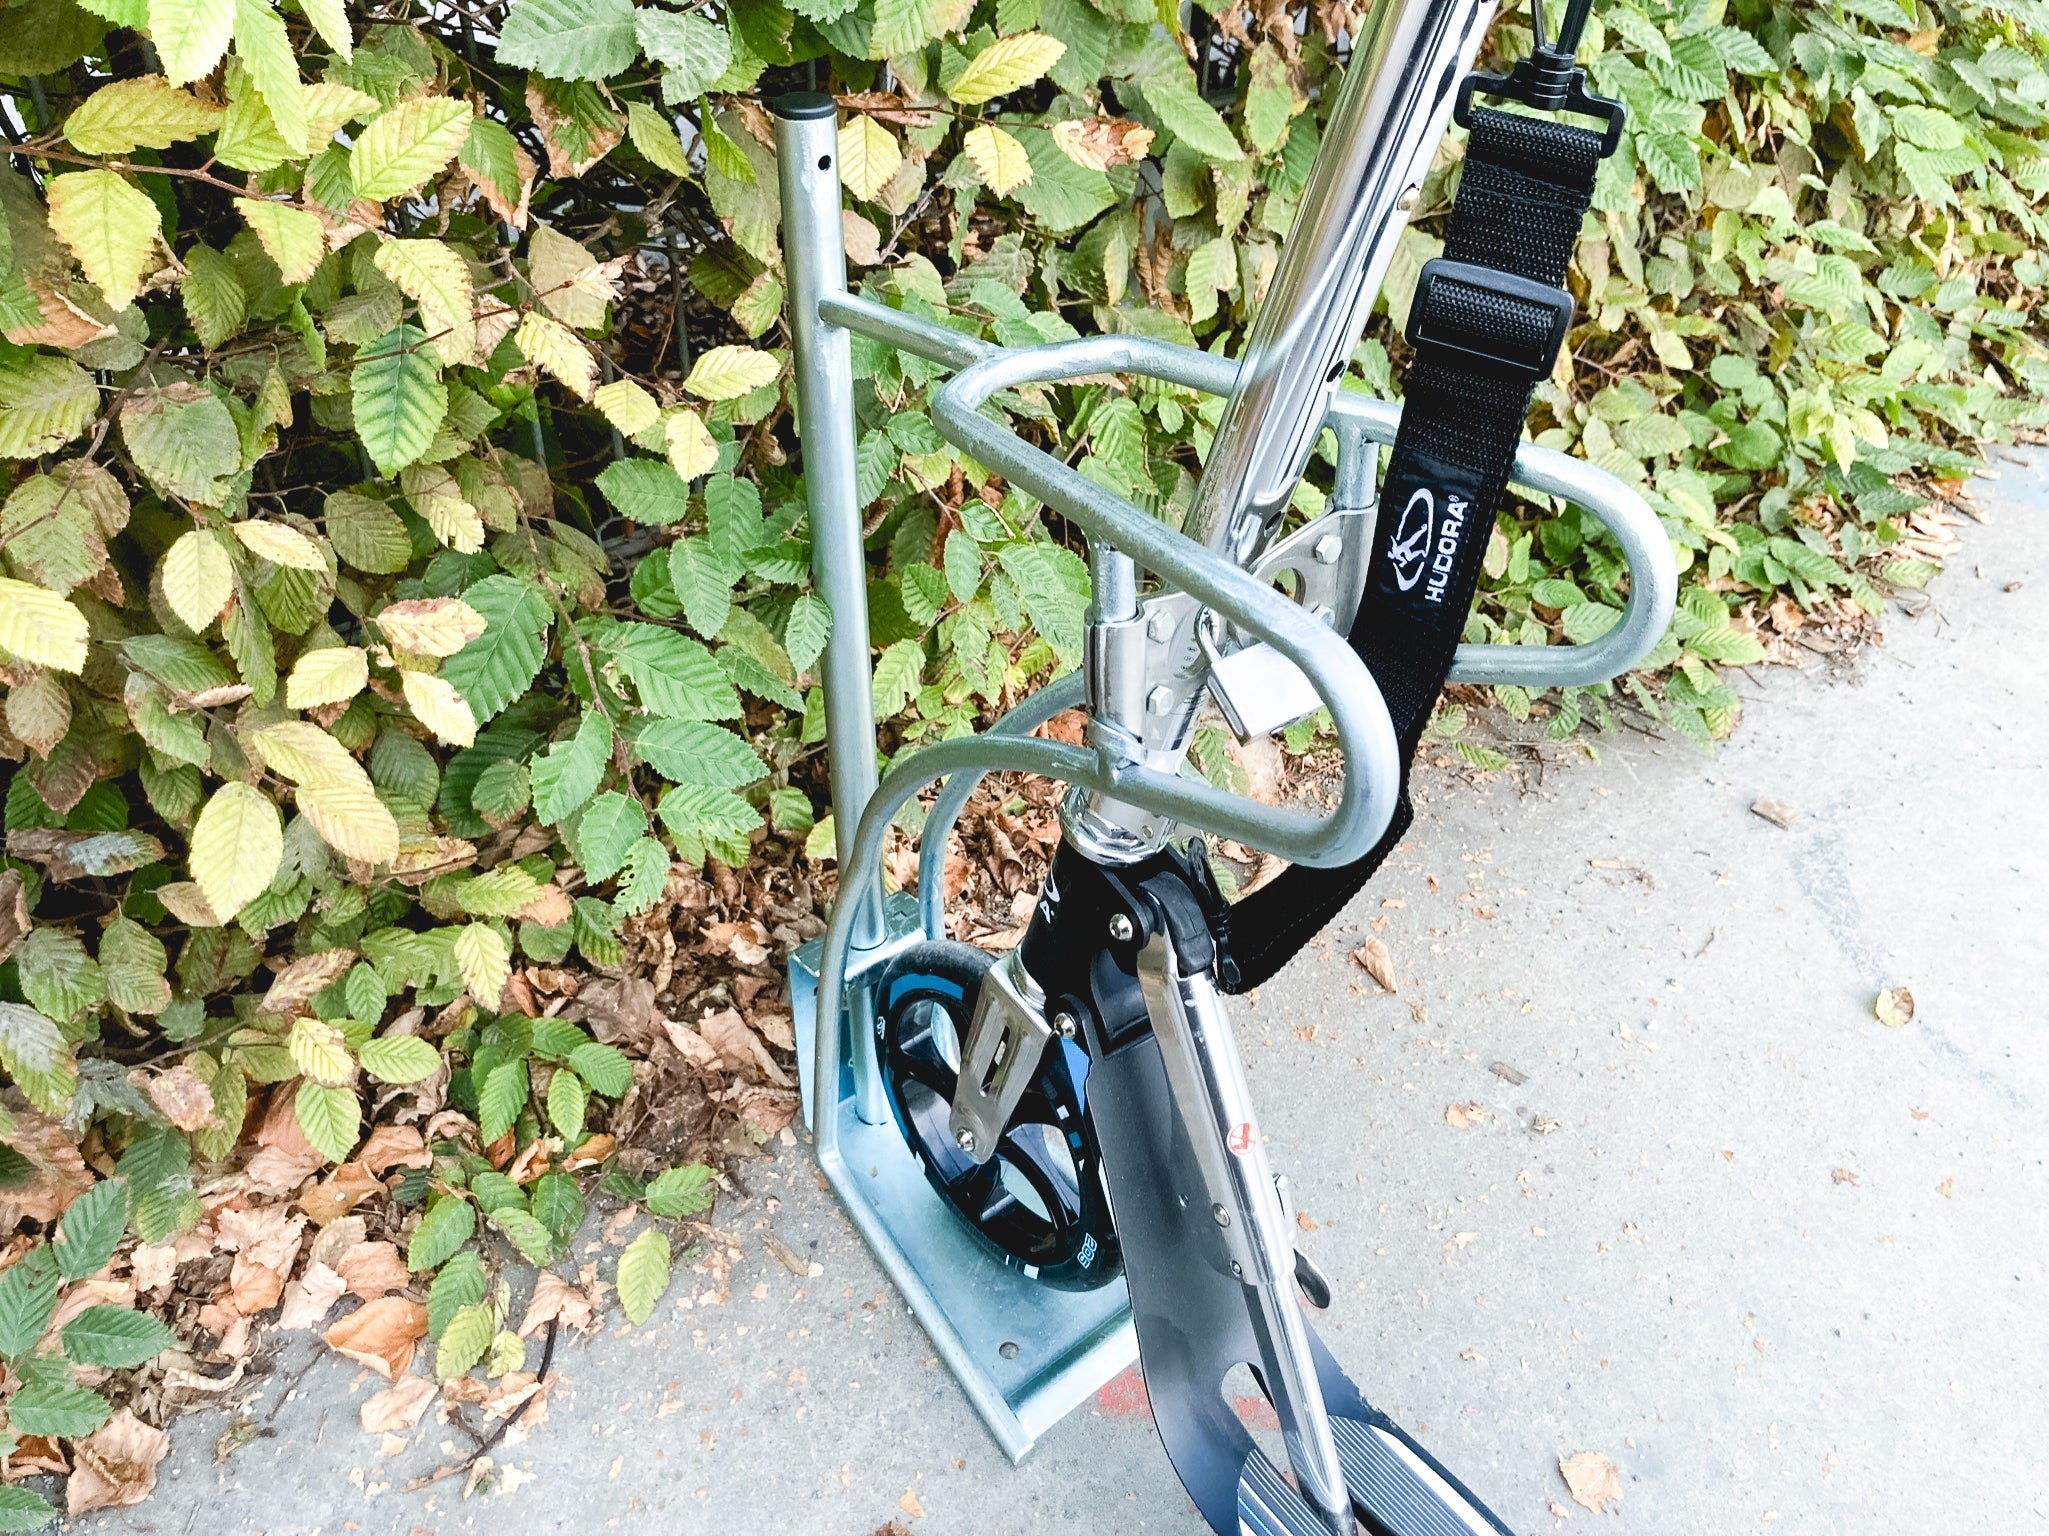 CLEDO - support pour trottinettes et vélos avec un nombre de places de stationnement verrouillables au choix  pour les trottinettes électriques, les trottinettes à pédales et les vélos.